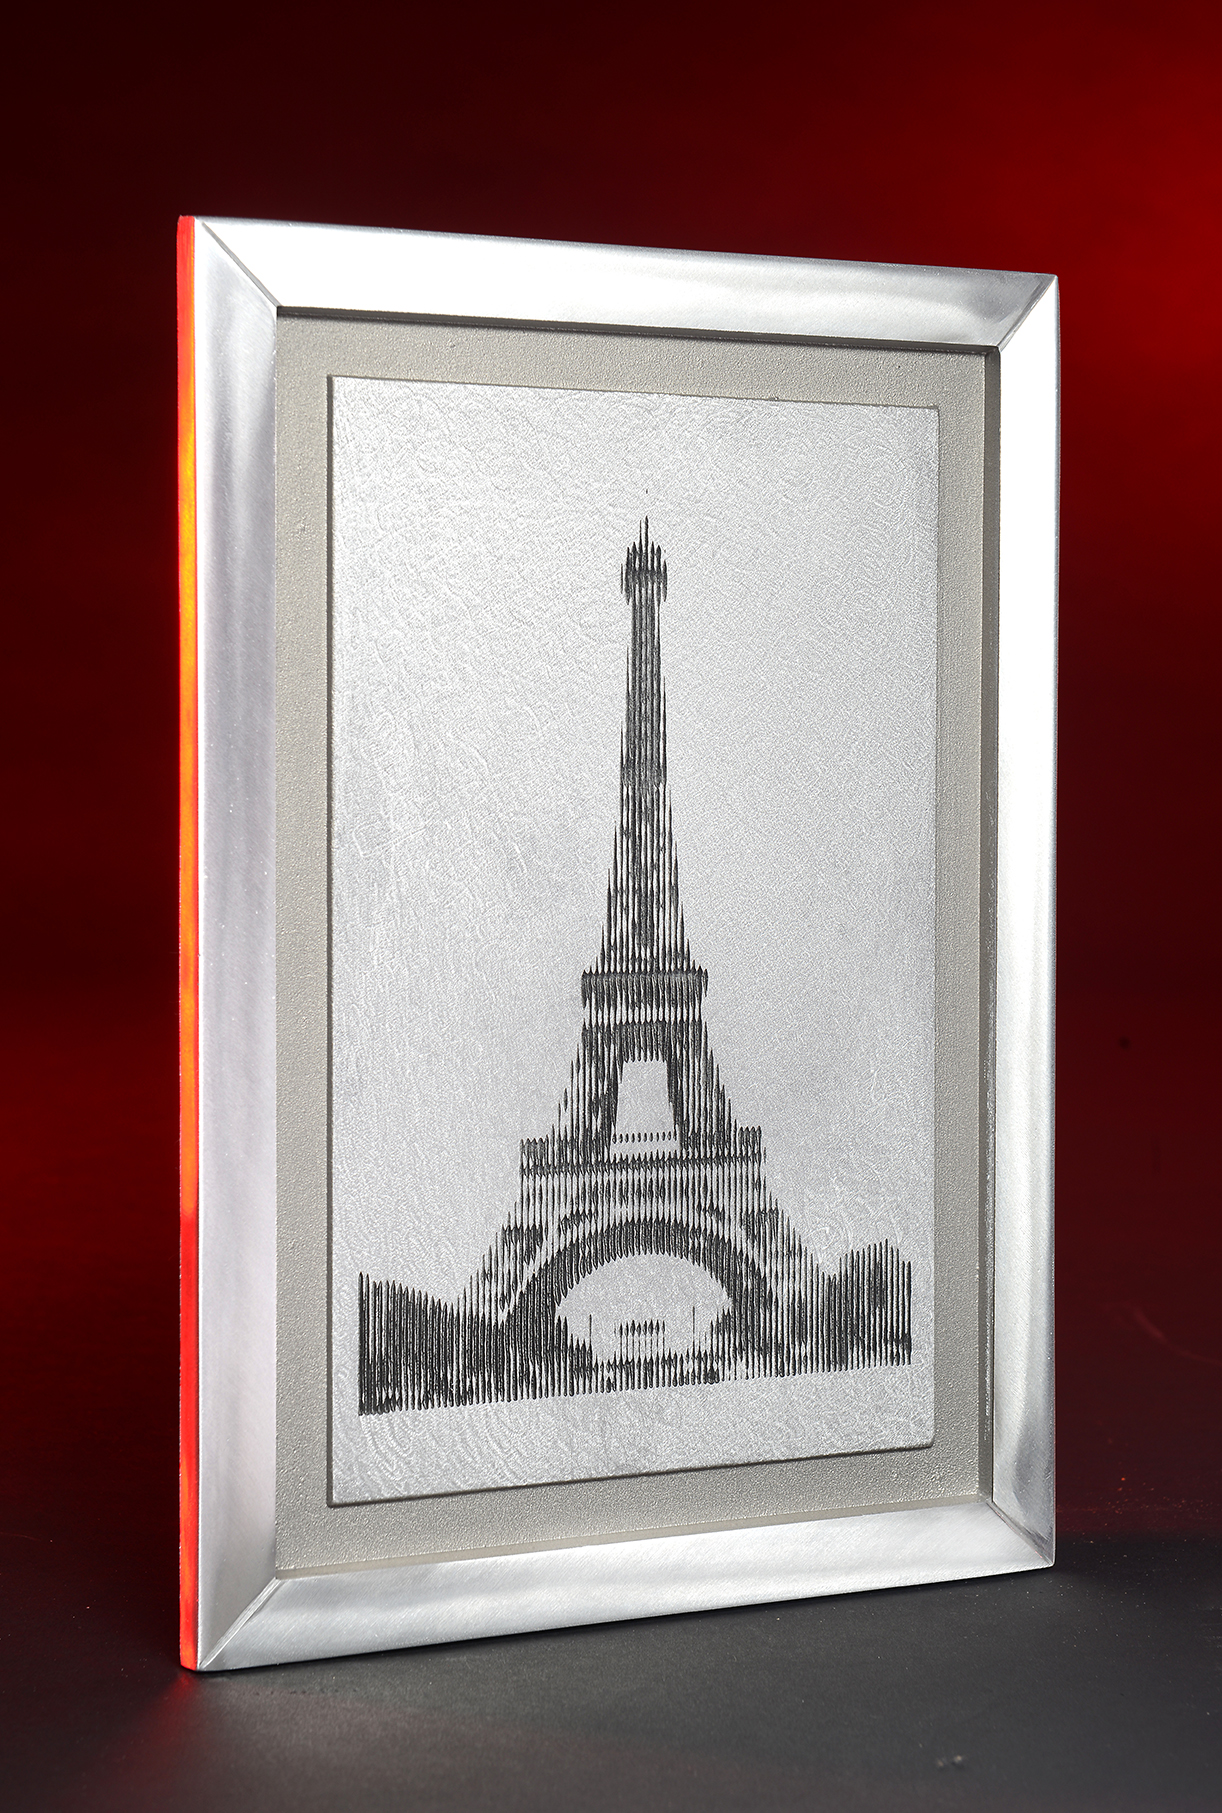 Tableau 'Tour Eiffel'